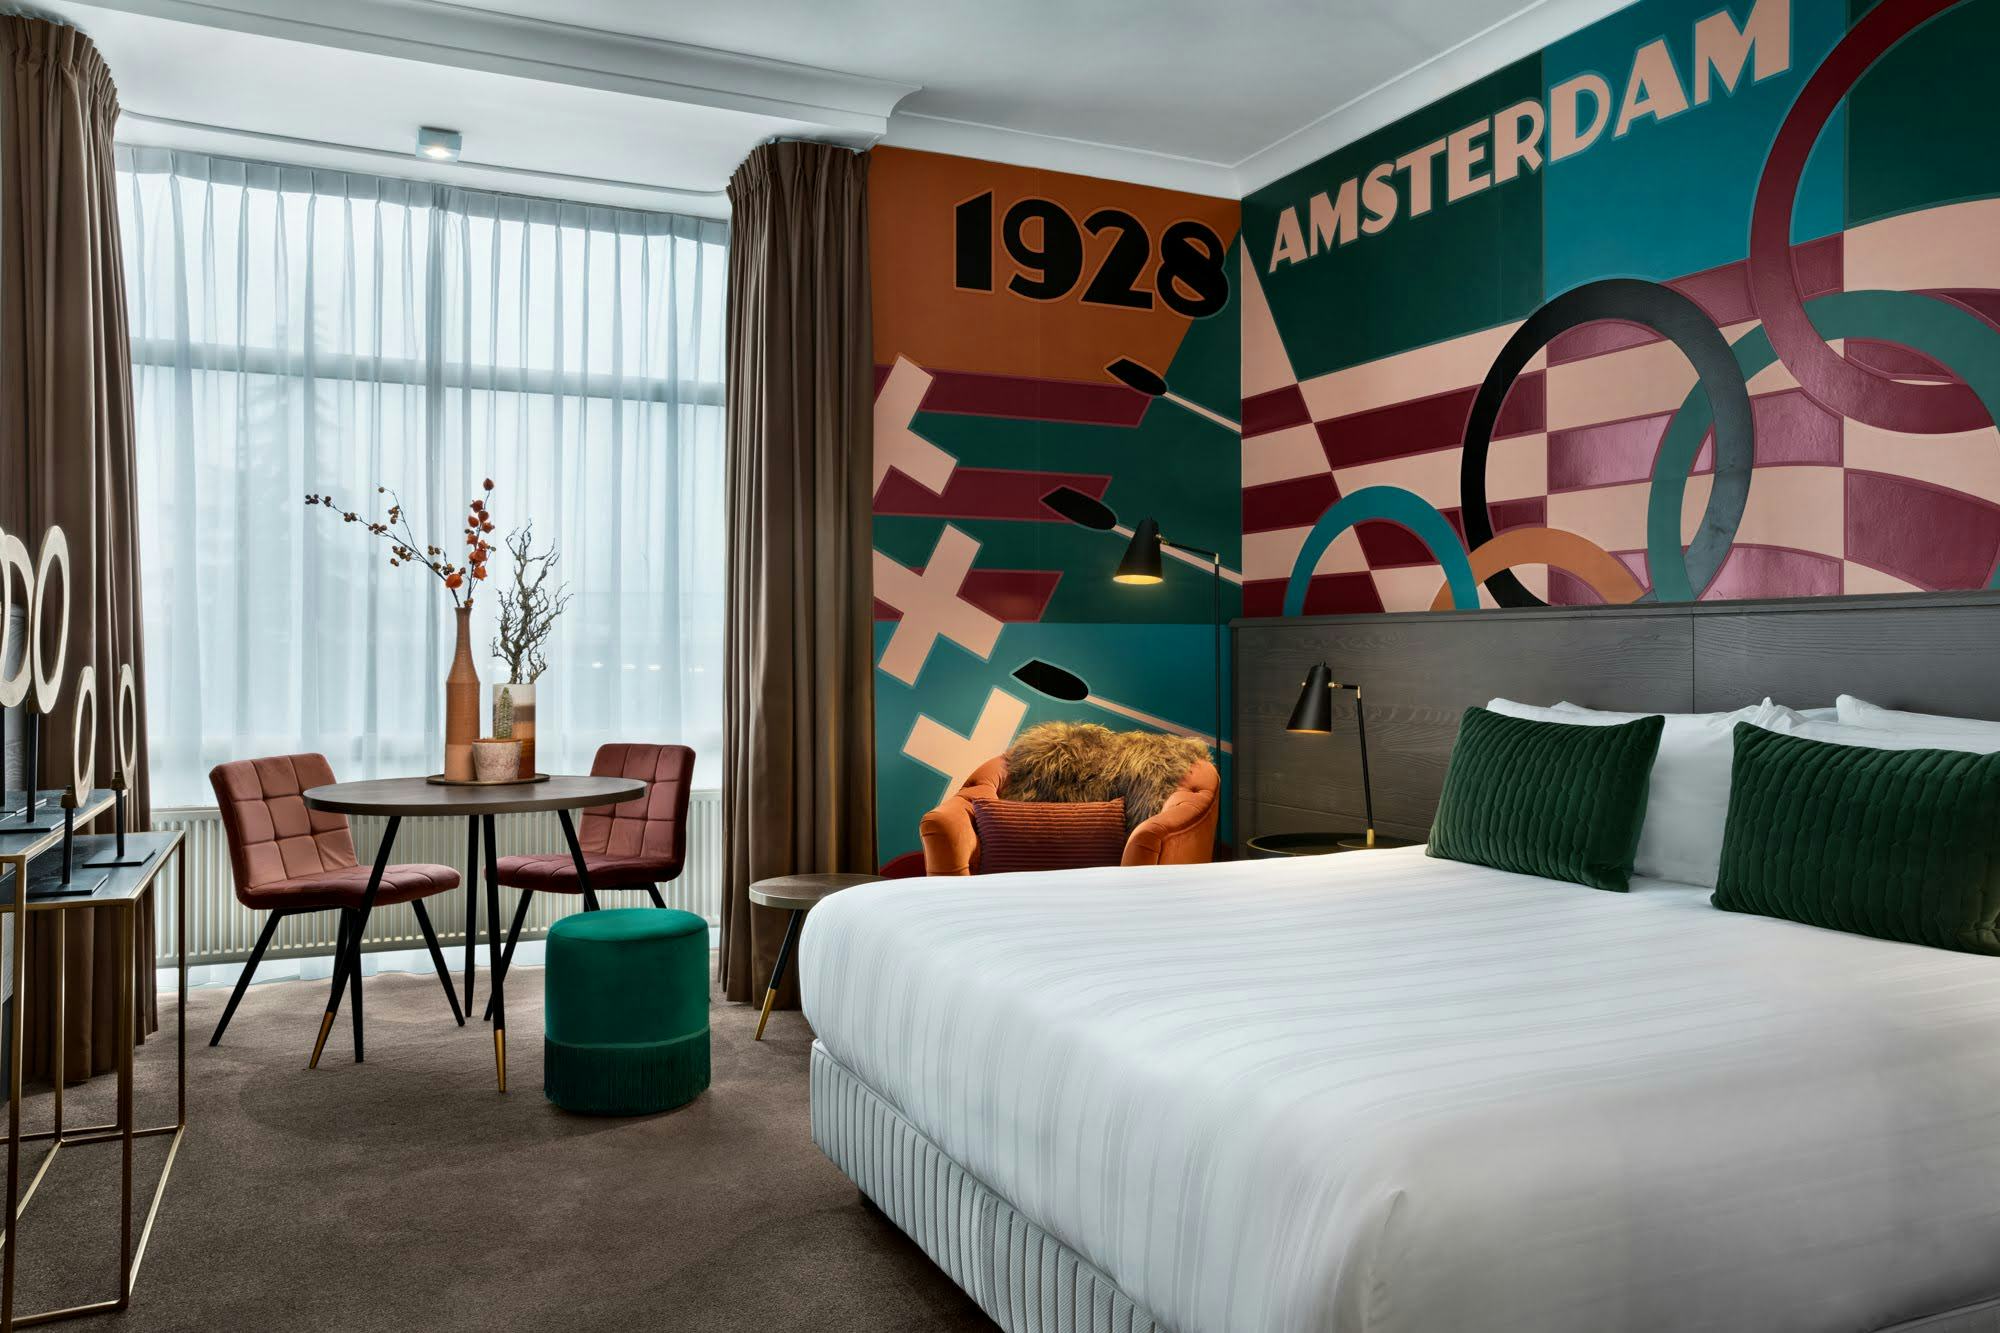 Op Olympische Spelen van 1928 geïnspireerde kamerdesign Apollo Hotel Amsterdam.